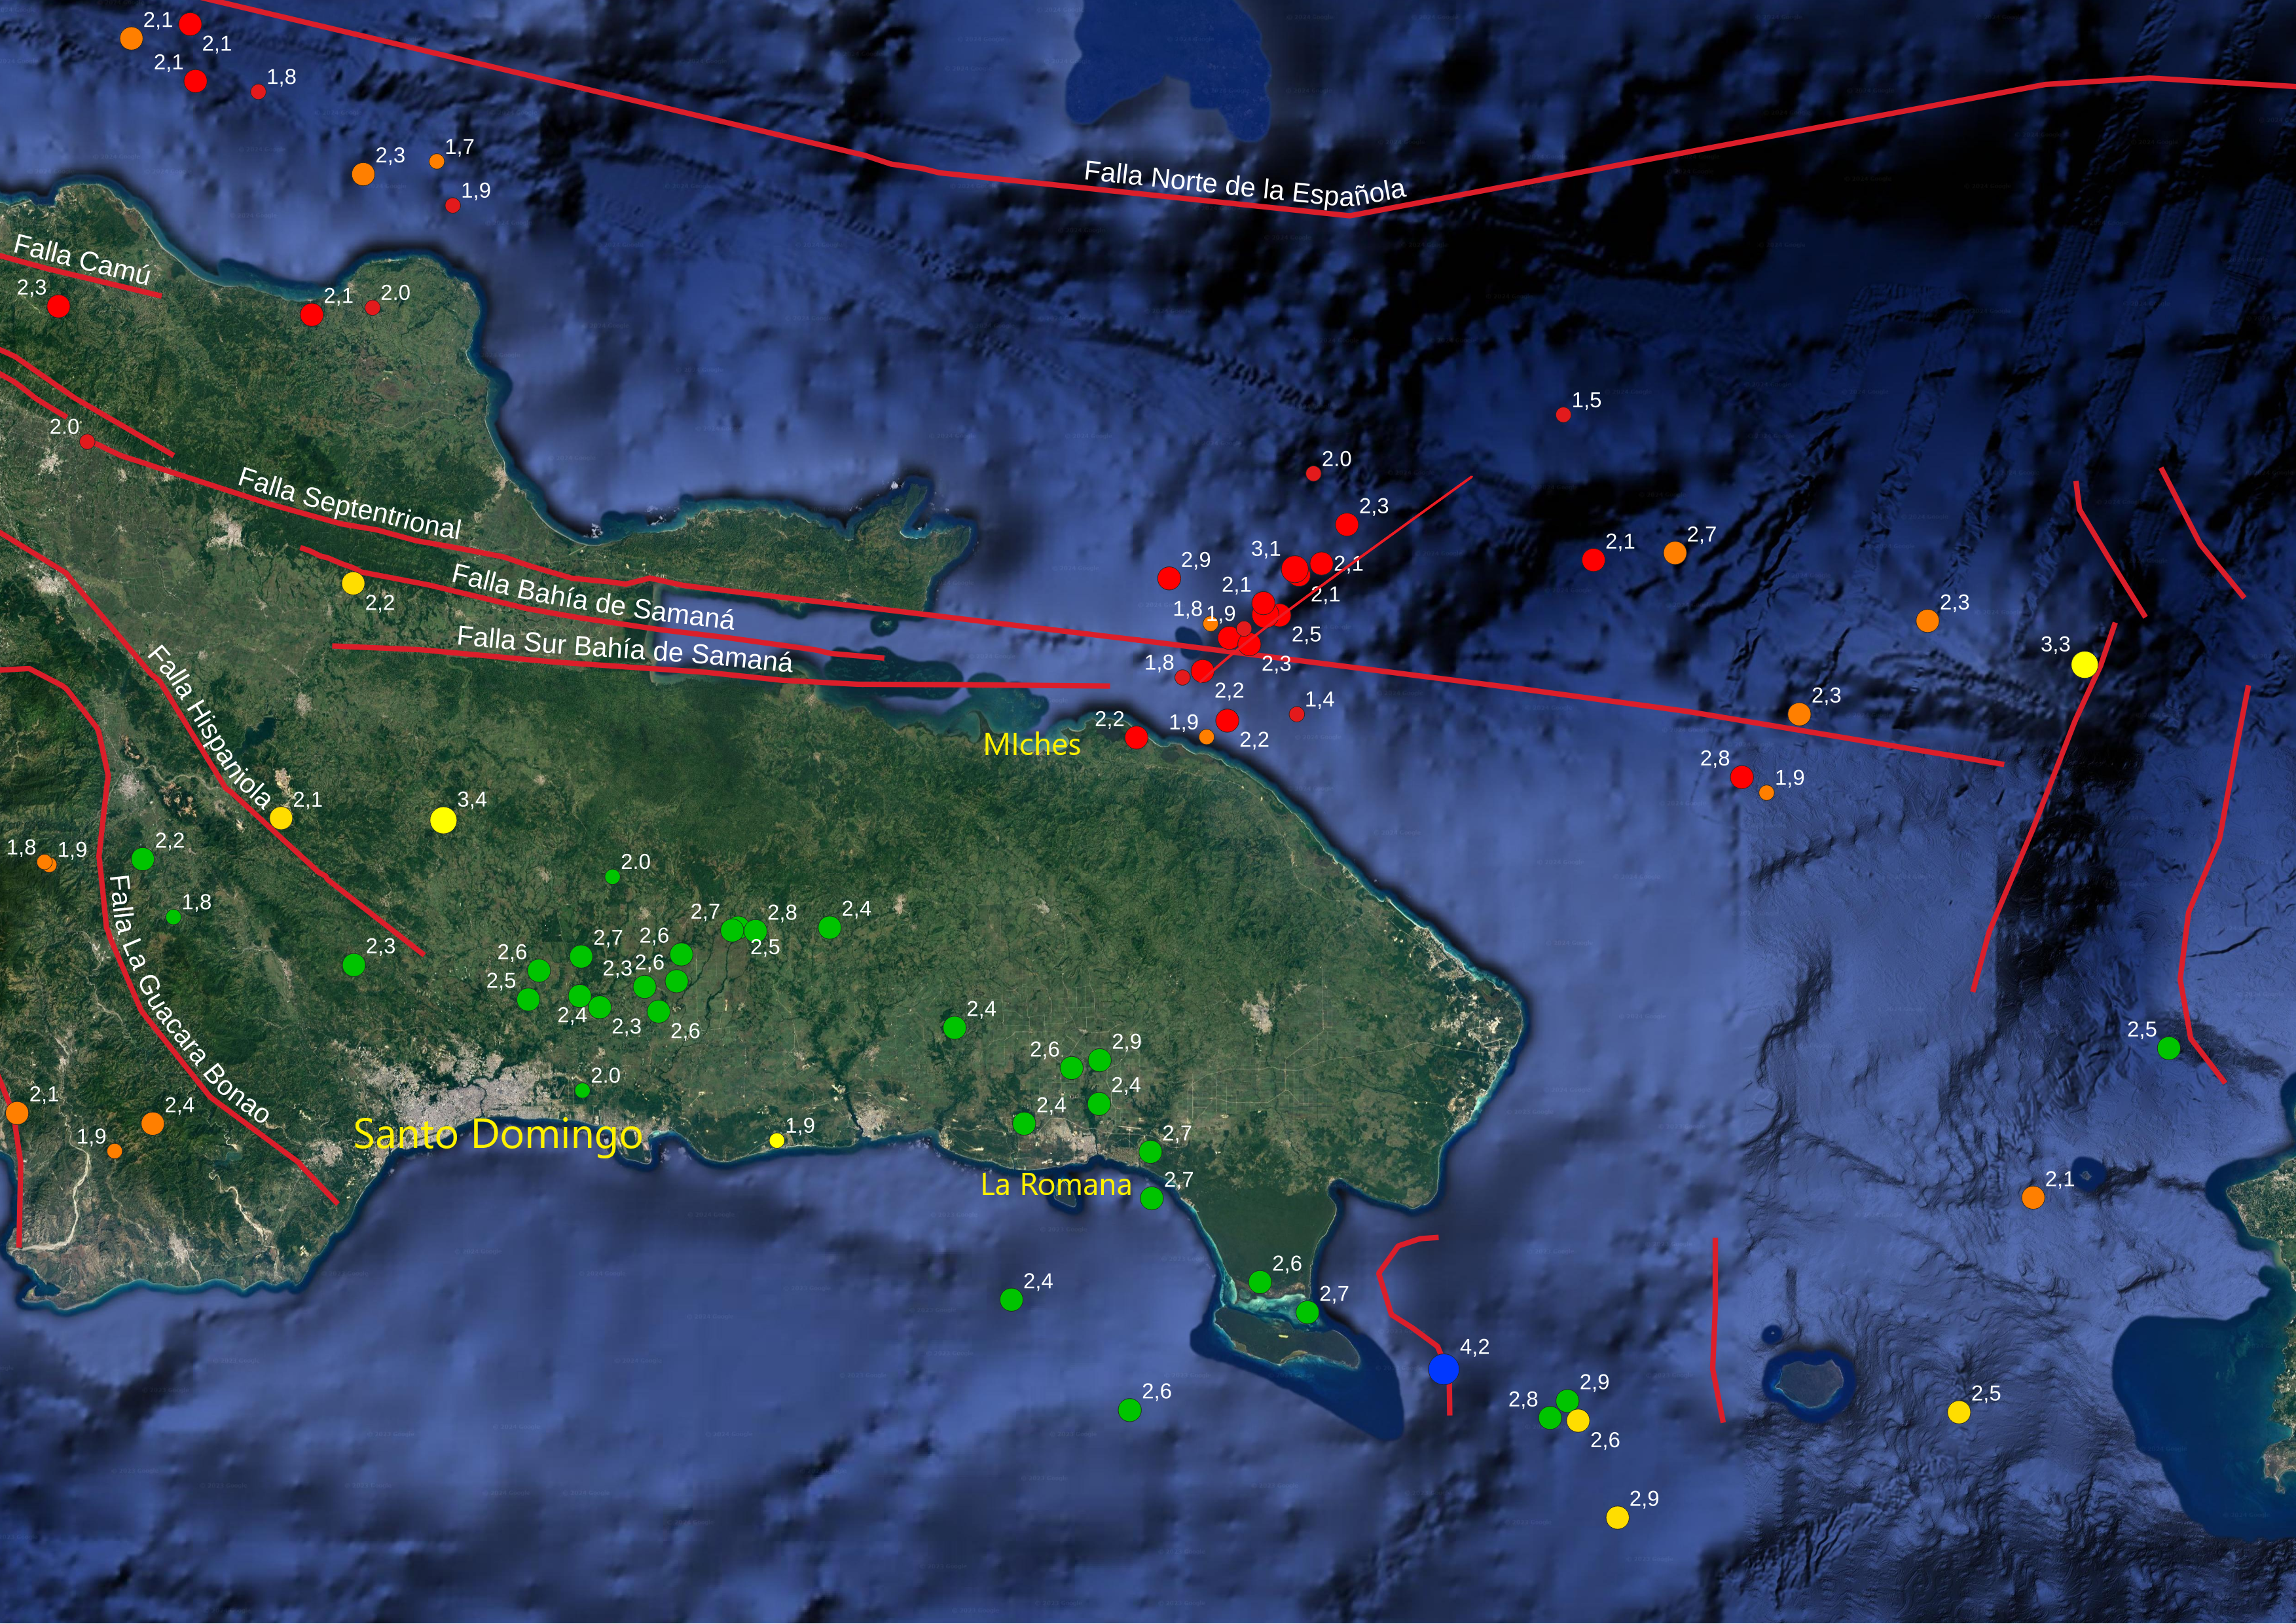 Figura 3, Mapa del este de la República Dominicana mostrando las réplicas de los temblores de 5.0 a fines de diciembre al noreste de Miches, así mismo con globos verdes, la sismicidad entre 70 y 150 km de profundidad al norte de Santo Domingo y La Romana.